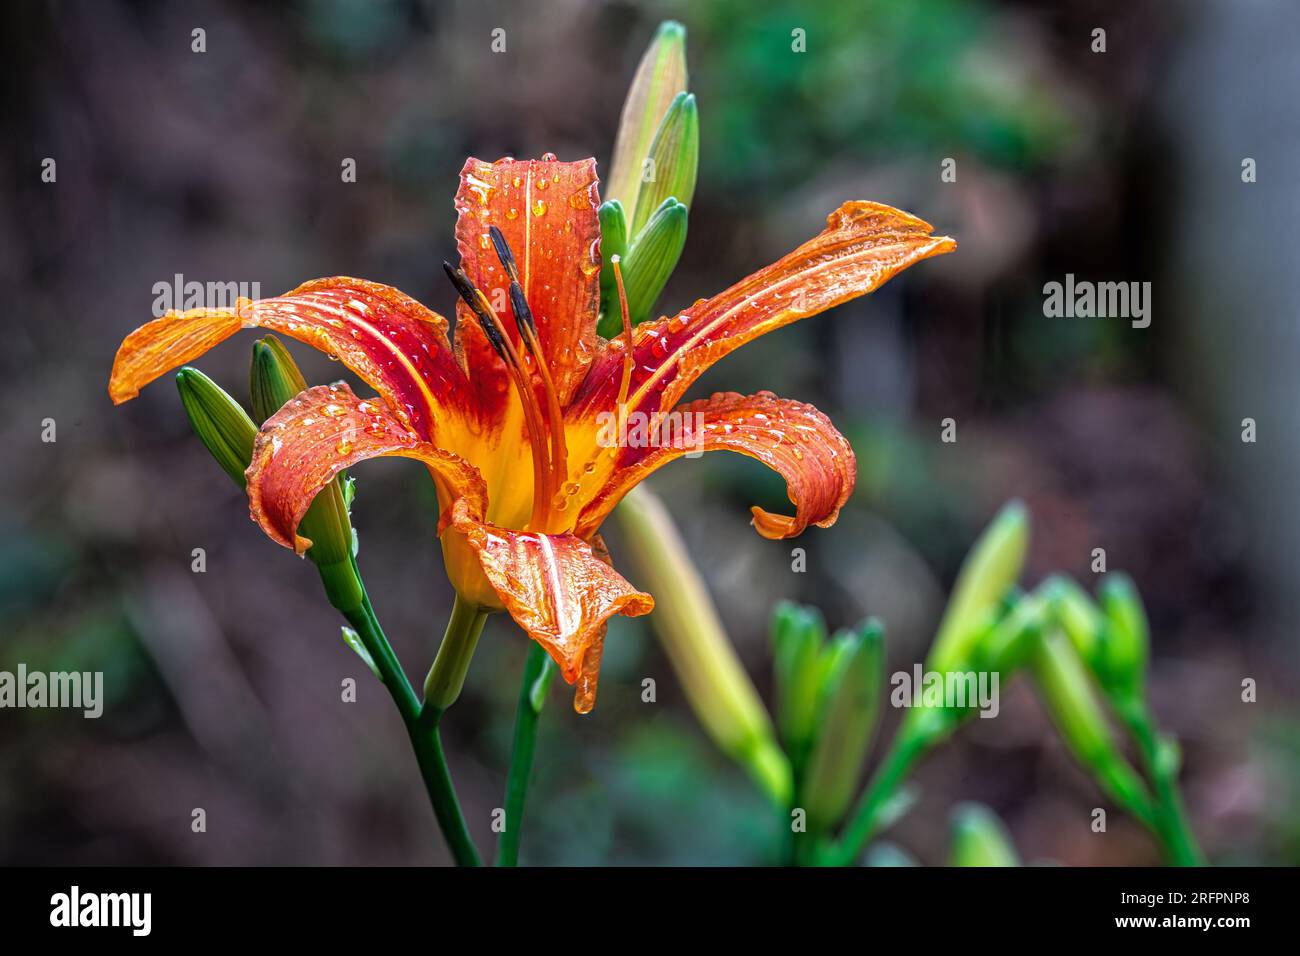 Fiore splendido daylily arancione in una giornata piovosa Foto de stock